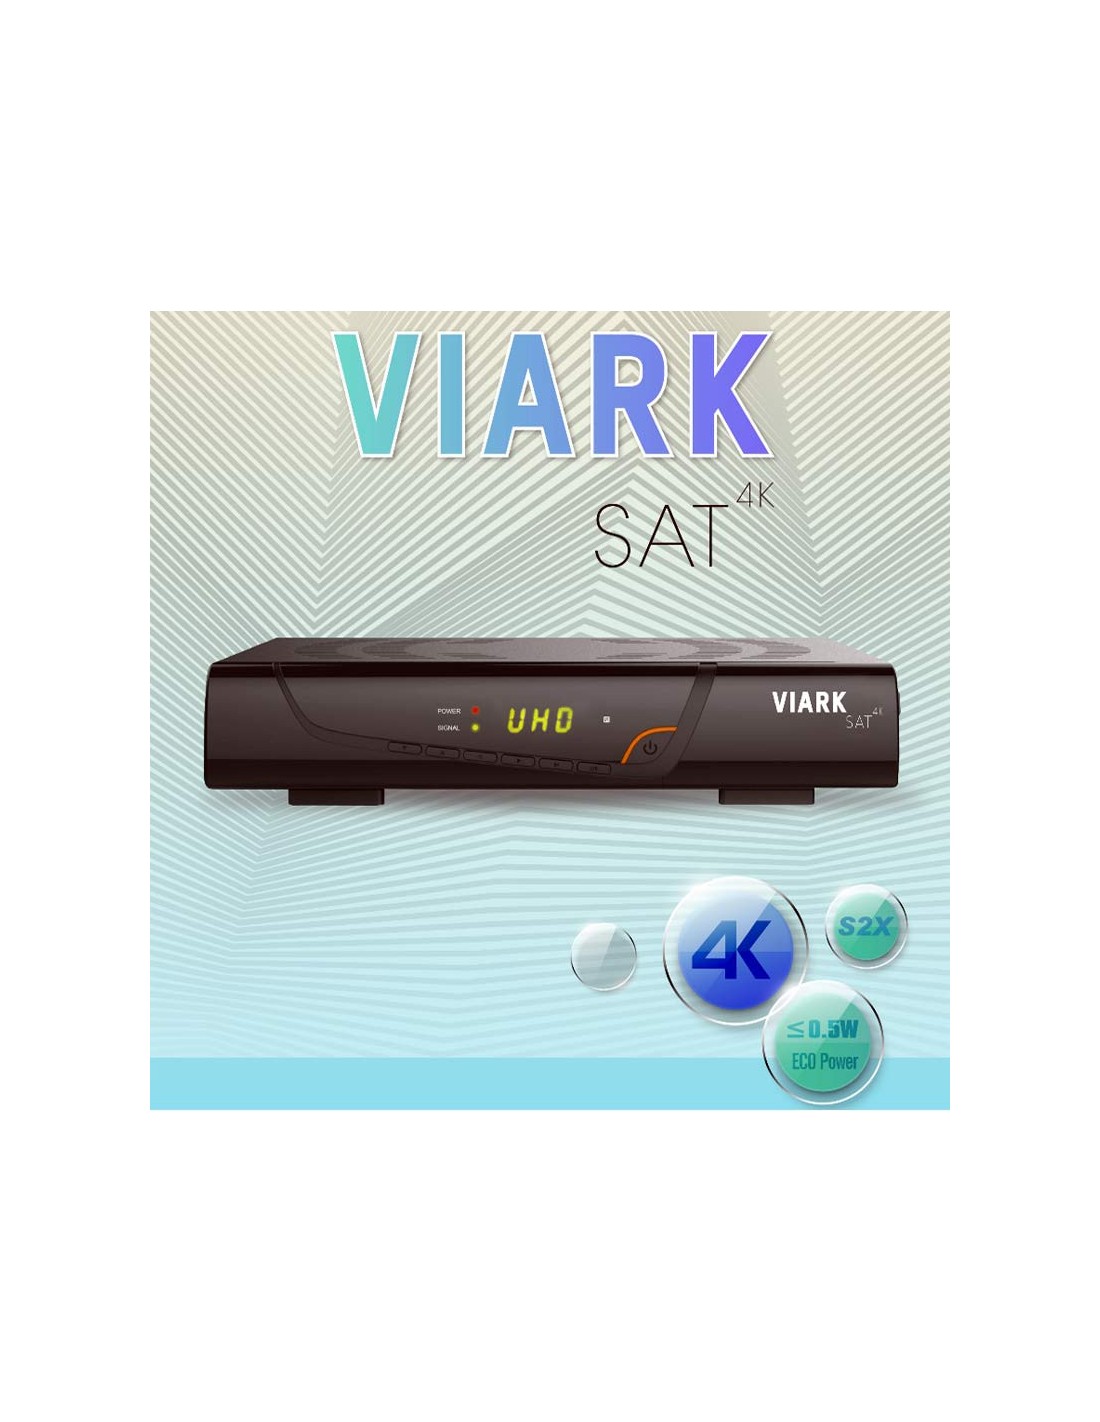 ▷ Viark SAT 【Envío GRATIS 24H】✔️ Mejor Precio